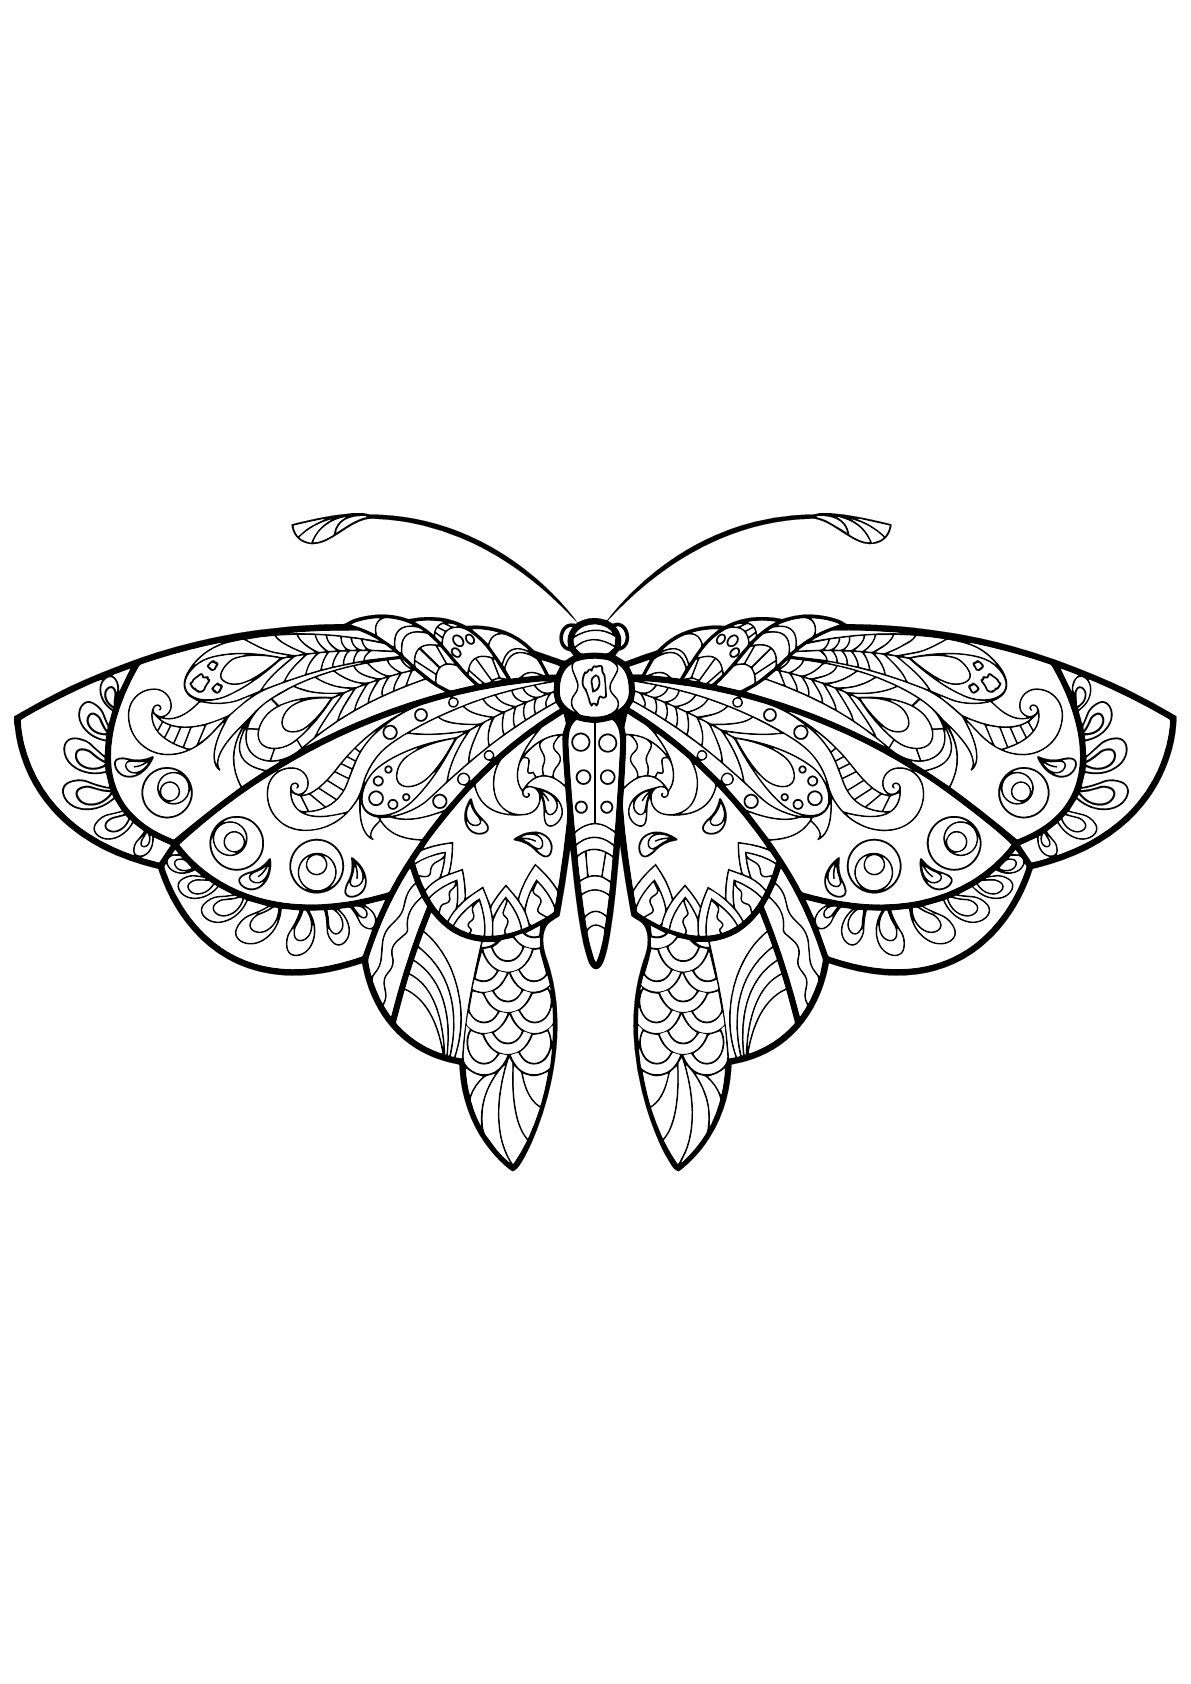 Mariposa con bellos e intrincados dibujos - 1